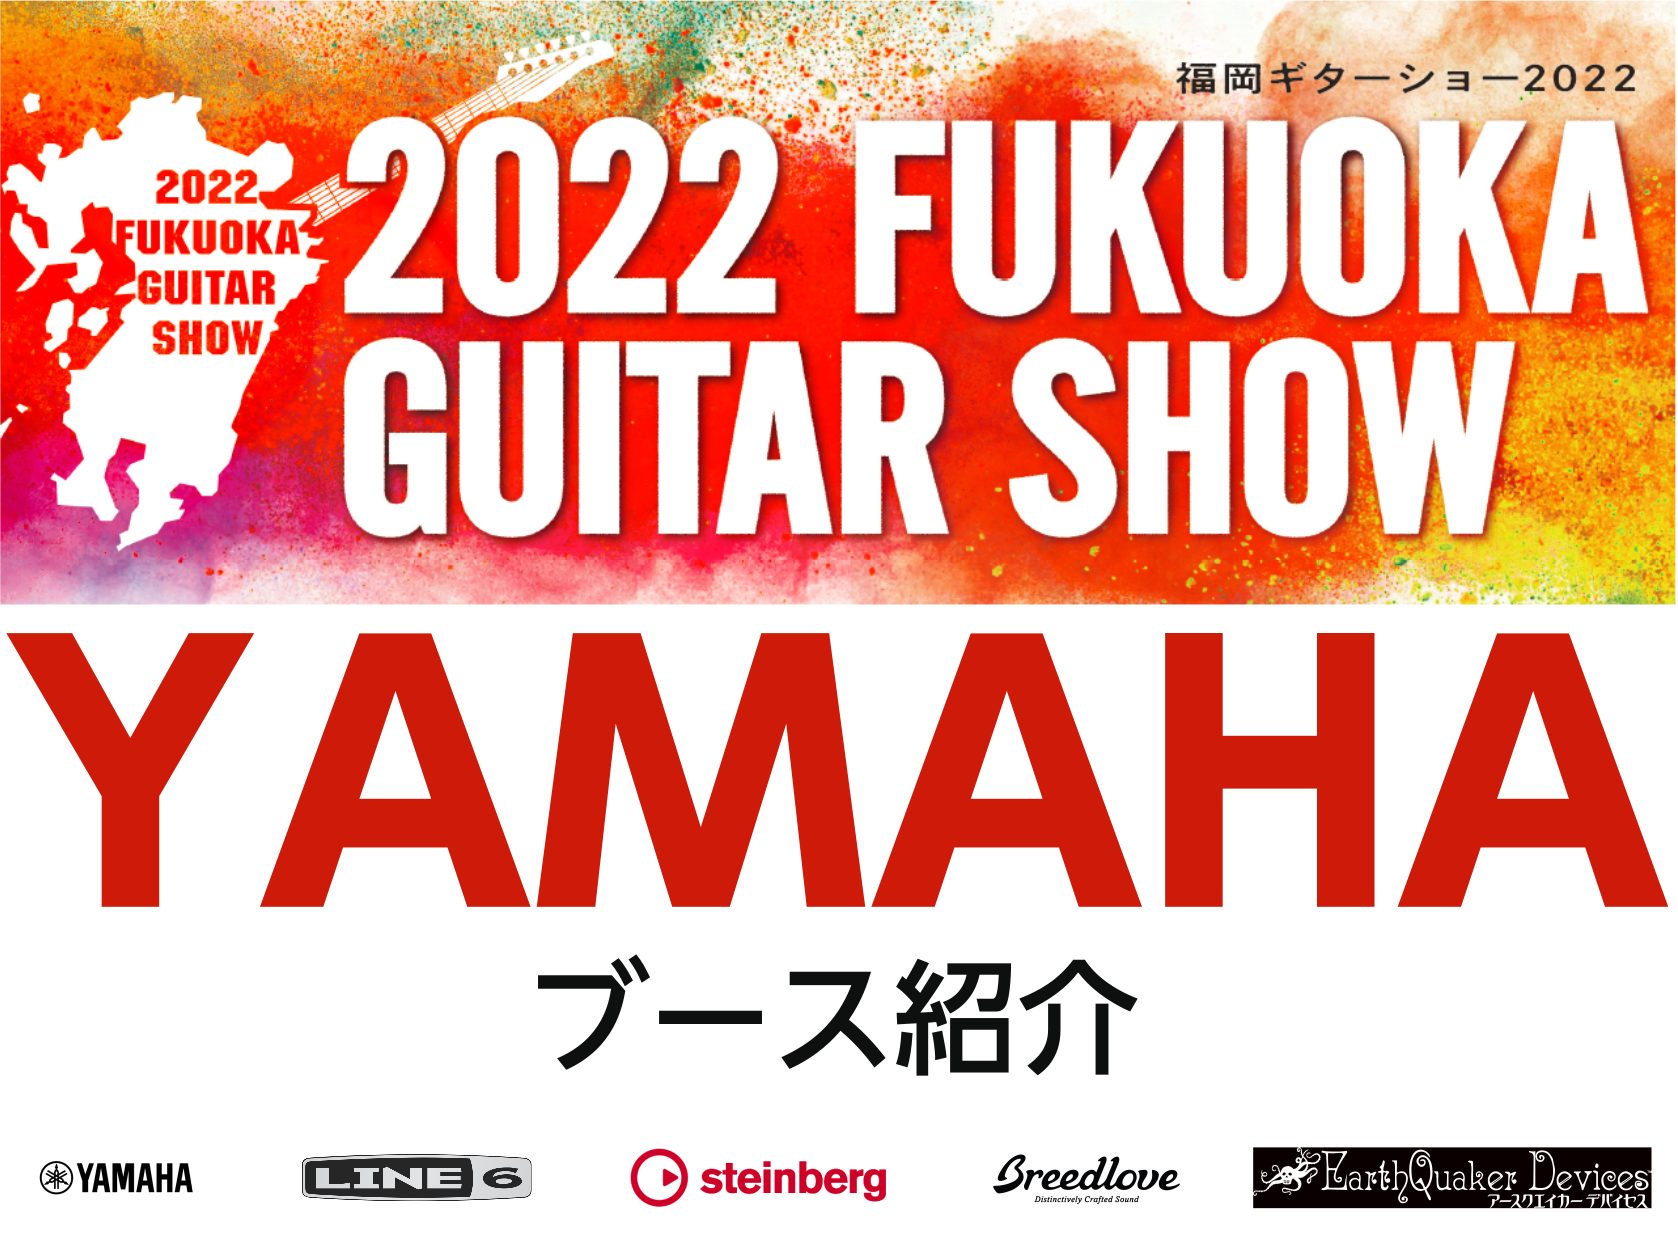 こんにちは！佐賀店の瀧本です。私が担当するのは、皆さんご存知のブランド『YAMAHA』です！ 今回の【2022福岡ギターショー】ではYAMAHA製品をはじめ、YAMAHAが輸入代理店を務める『Line6』、『steinberg』を中心に展示いたします。 2022福岡ギターショーは、展示している全ての […]